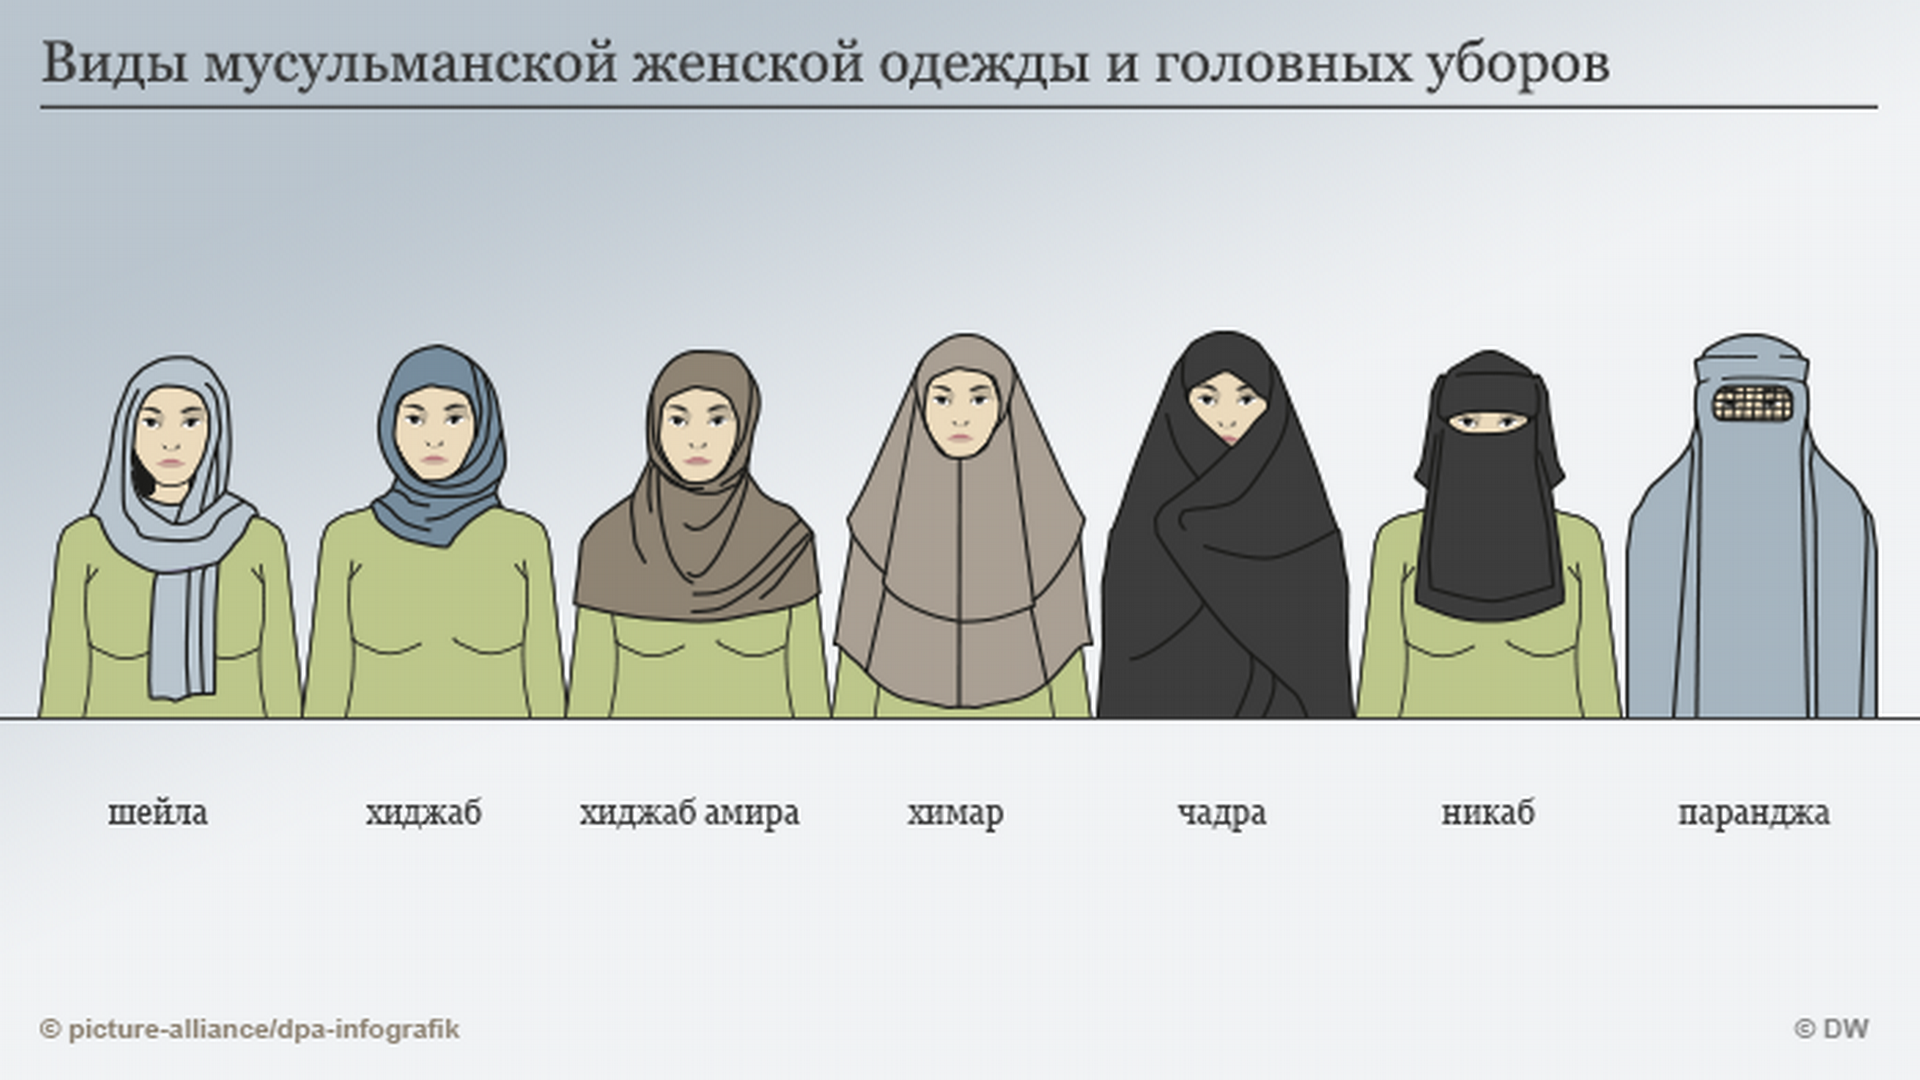 Хиджаб паранджа чадра никаб отличия